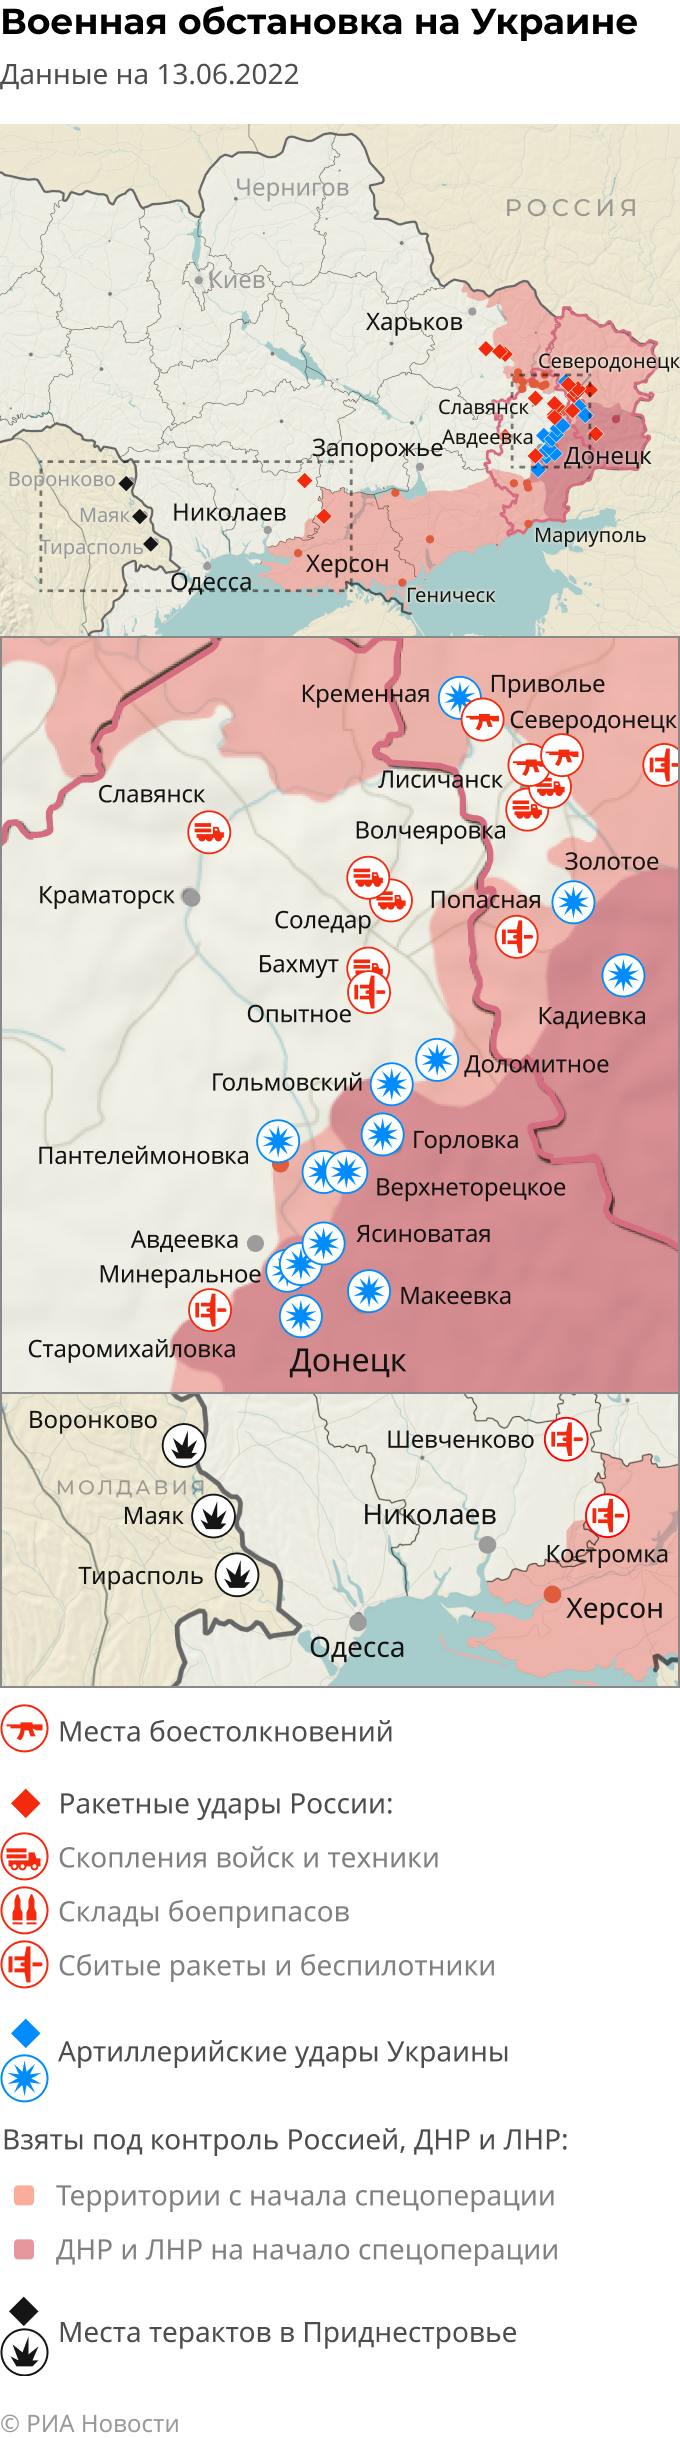 Карта вс рф на украине на сегодняшний день